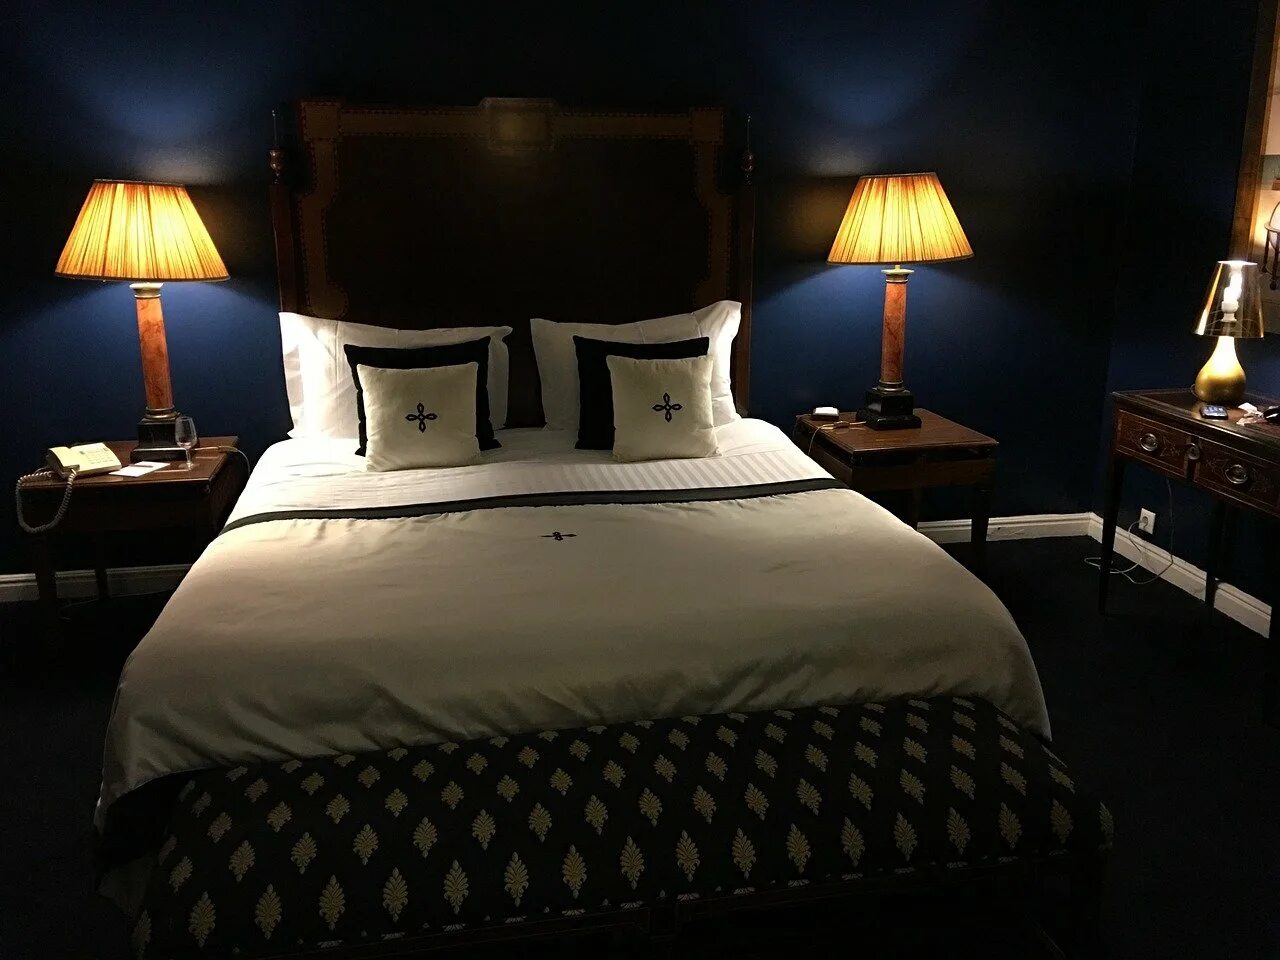 Кровать в отеле. Кровать ночью. Ночная спальня. Спальня в отеле. Постель в темноте